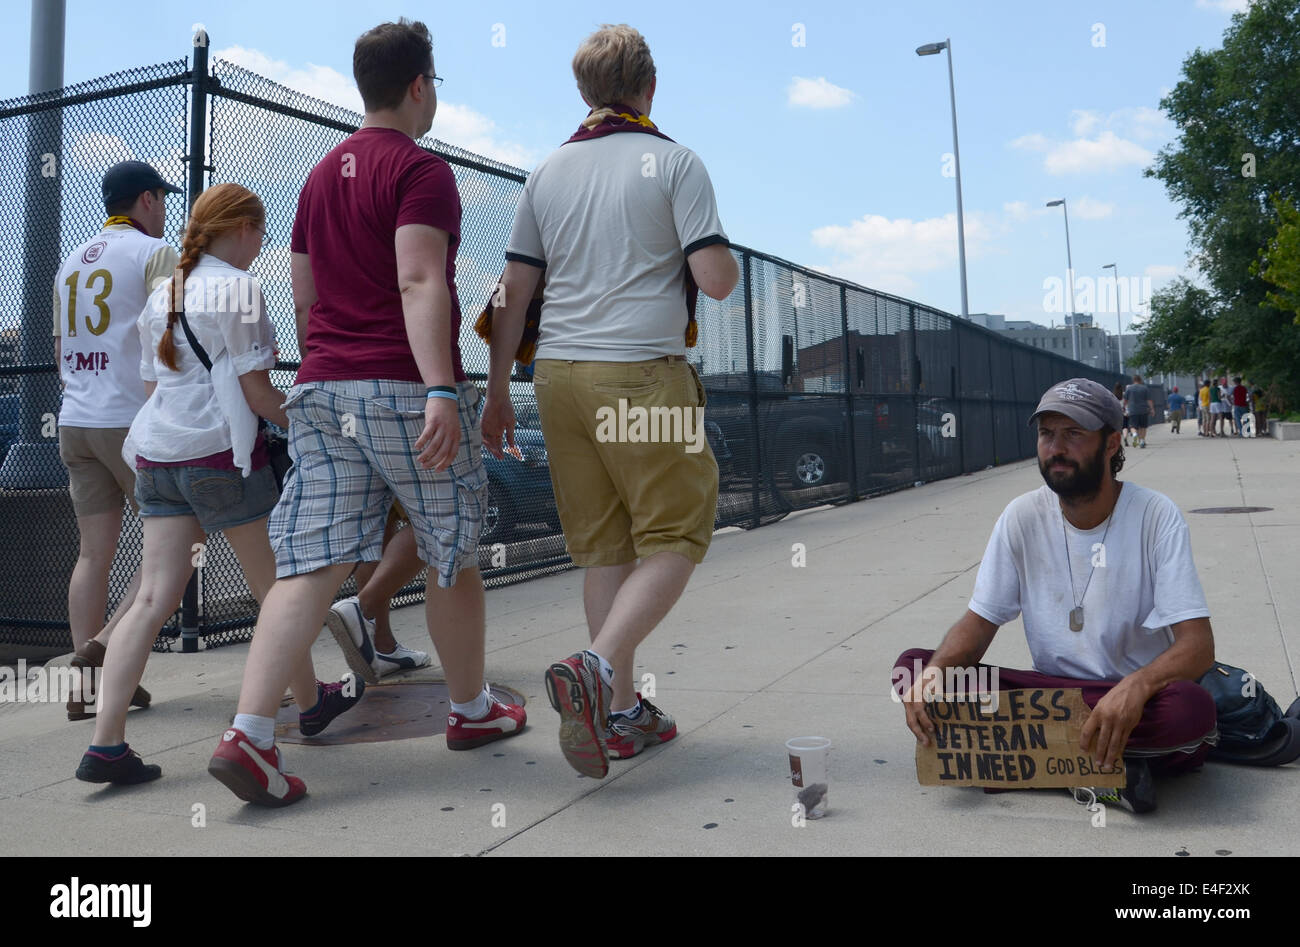 DETROIT, MI - 6 Juli: Passanten vorbei an Obdachlose Veteranen betteln um Geld in Detroit, MI am 6. Juli 2014 Stockfoto